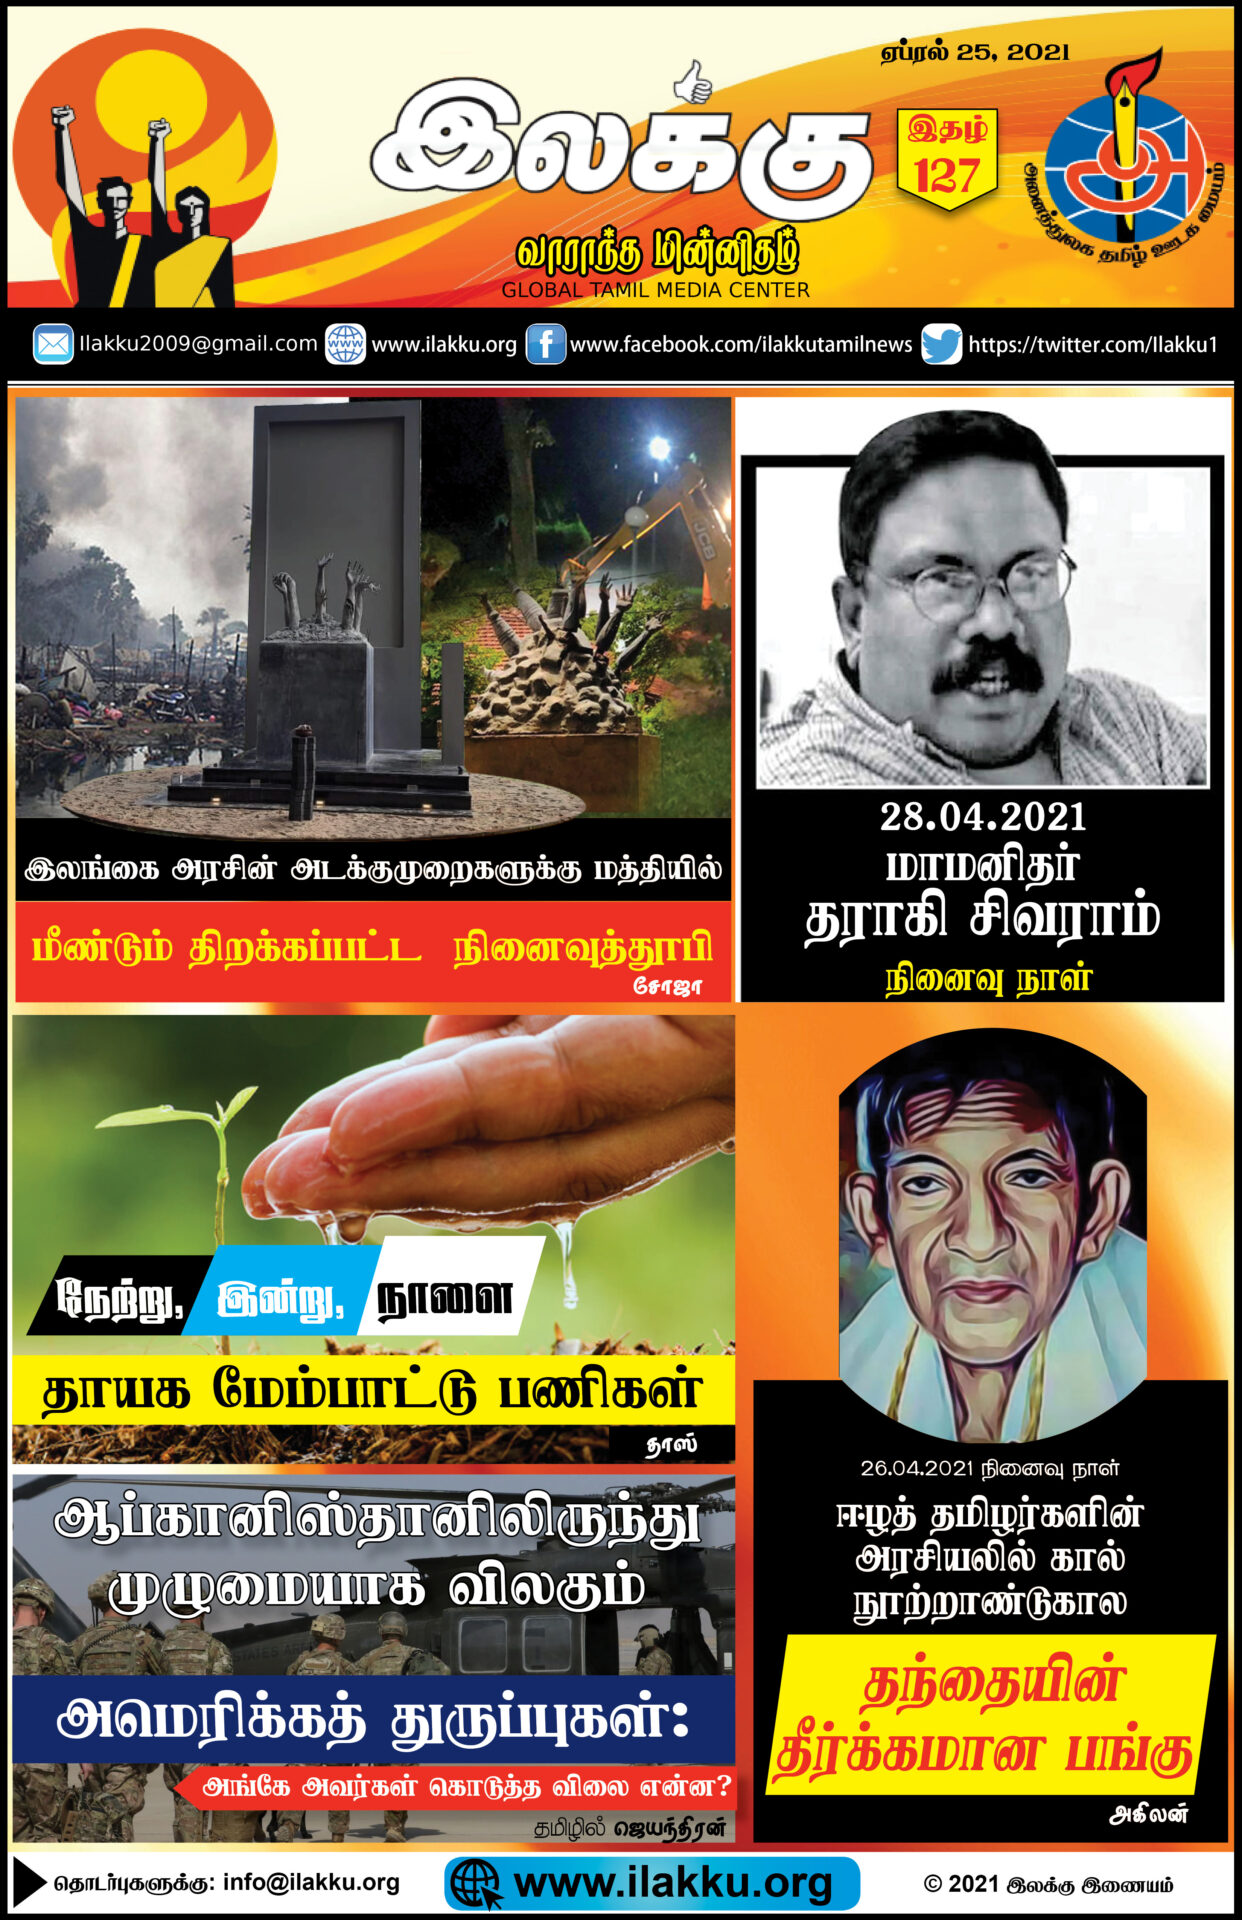 ilakku Weekly Epaper 127 April 25 2021 இலக்கு-இதழ்-127-ஏப்ரல்25, 2021